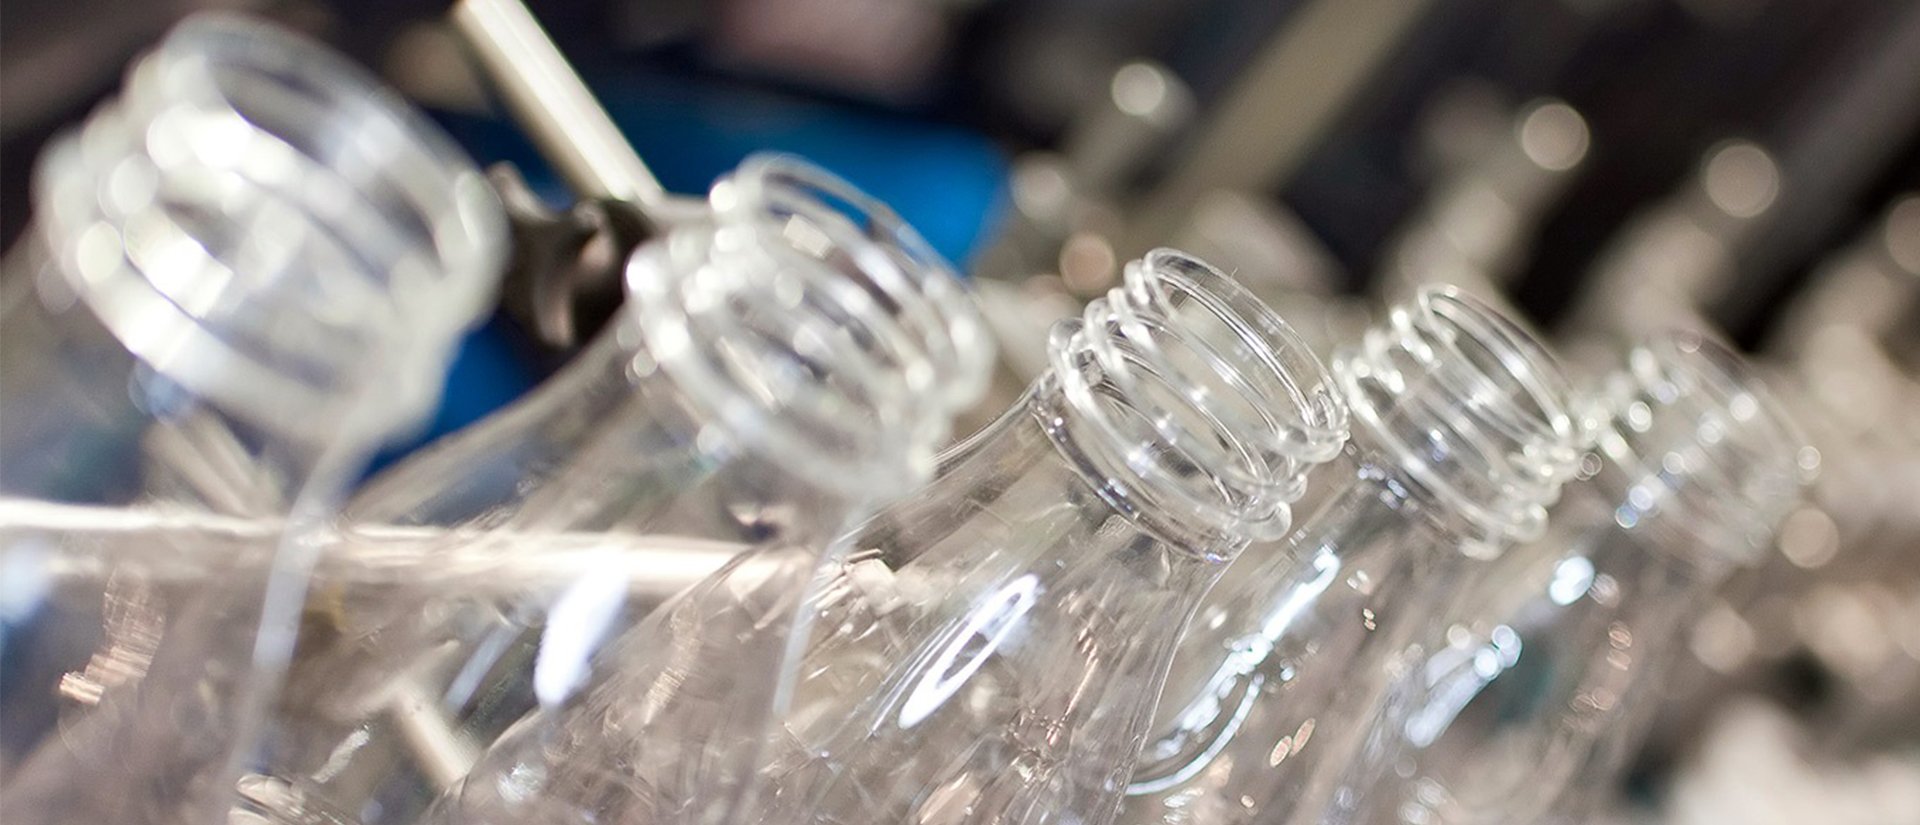 Полиэтилентерефталата – безвредный полимер для изготовления бутылок